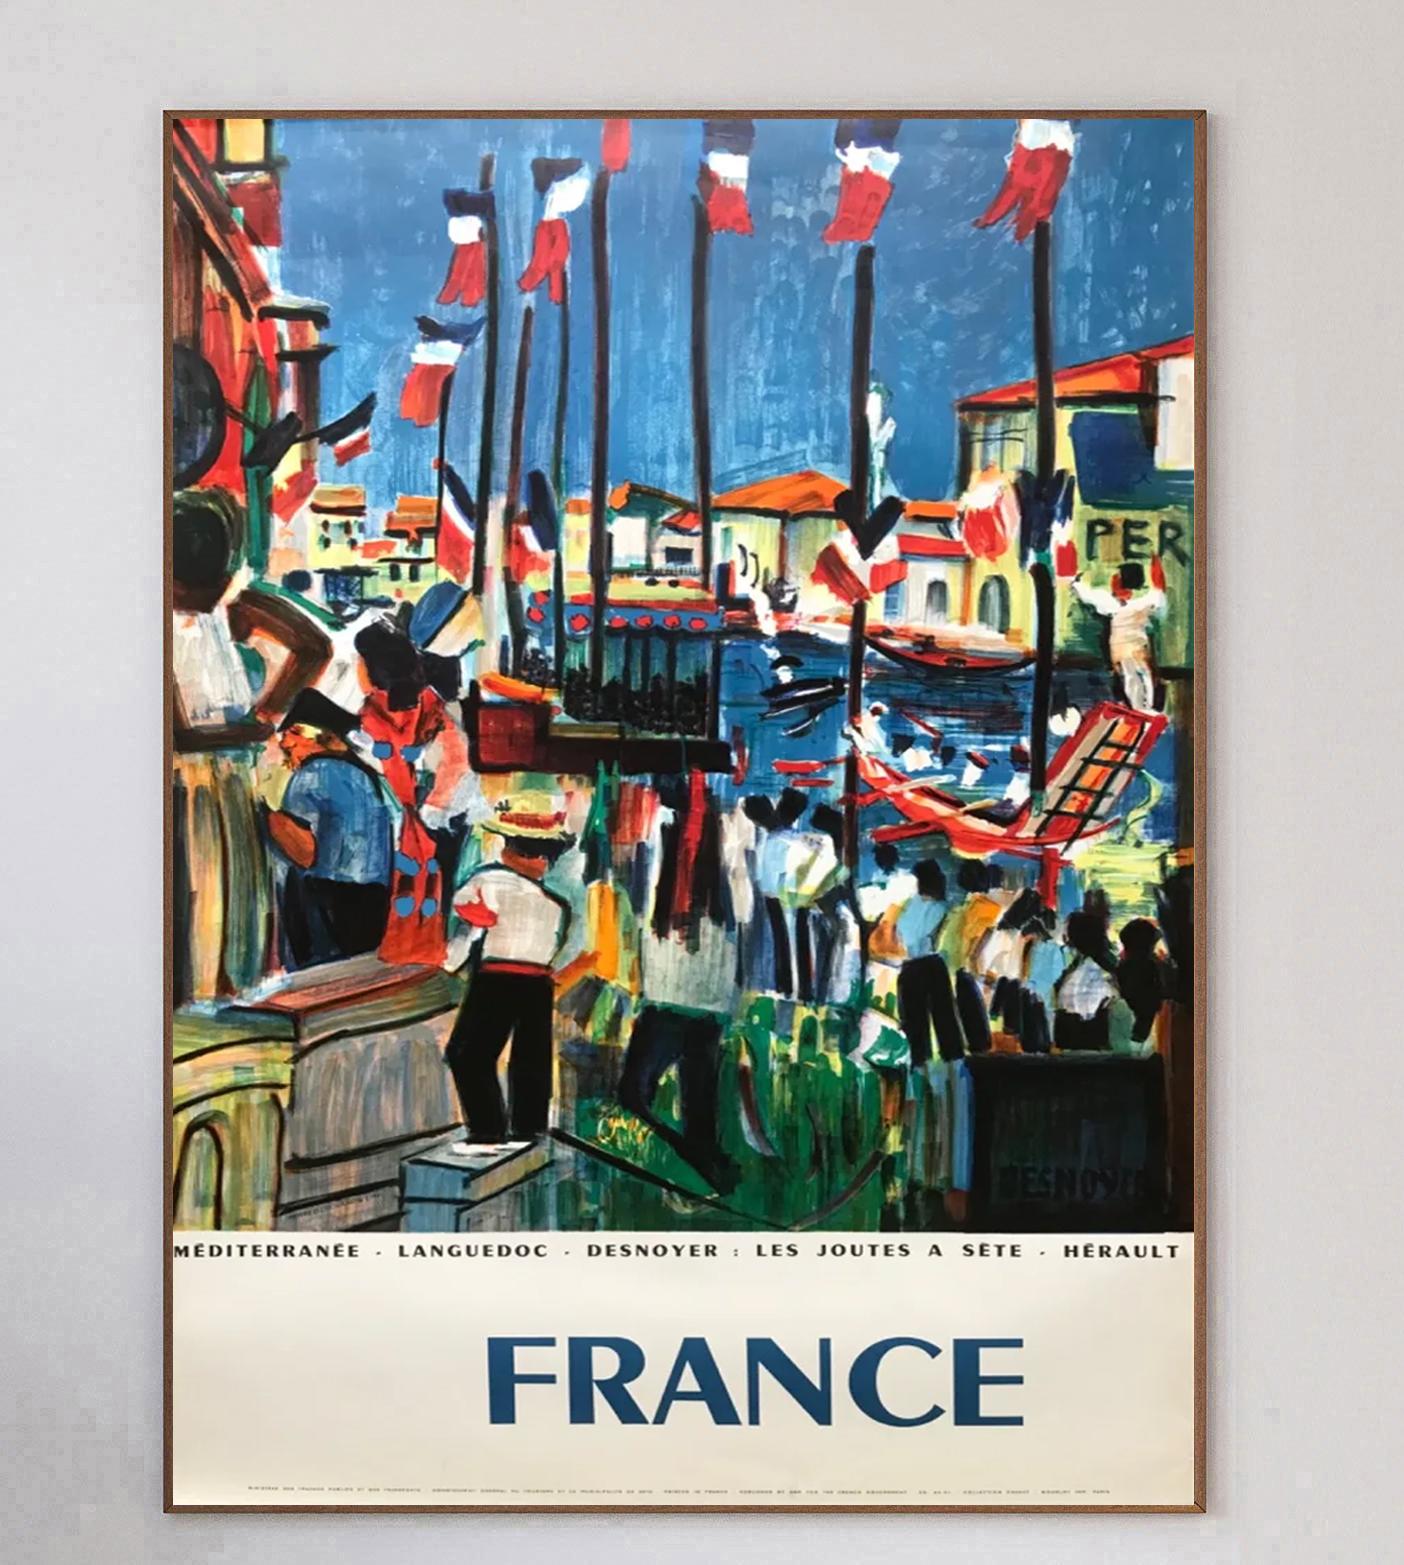 Mit wunderschönen Bildern des französischen Malers Francois Desnoyer, die die Feierlichkeiten auf den Straßen und am Fluss zeigen, mit denen Frankreich vermutlich den Tag der Bastille begeht. Das farbenfrohe Design zeigt die rot-weiß-blauen